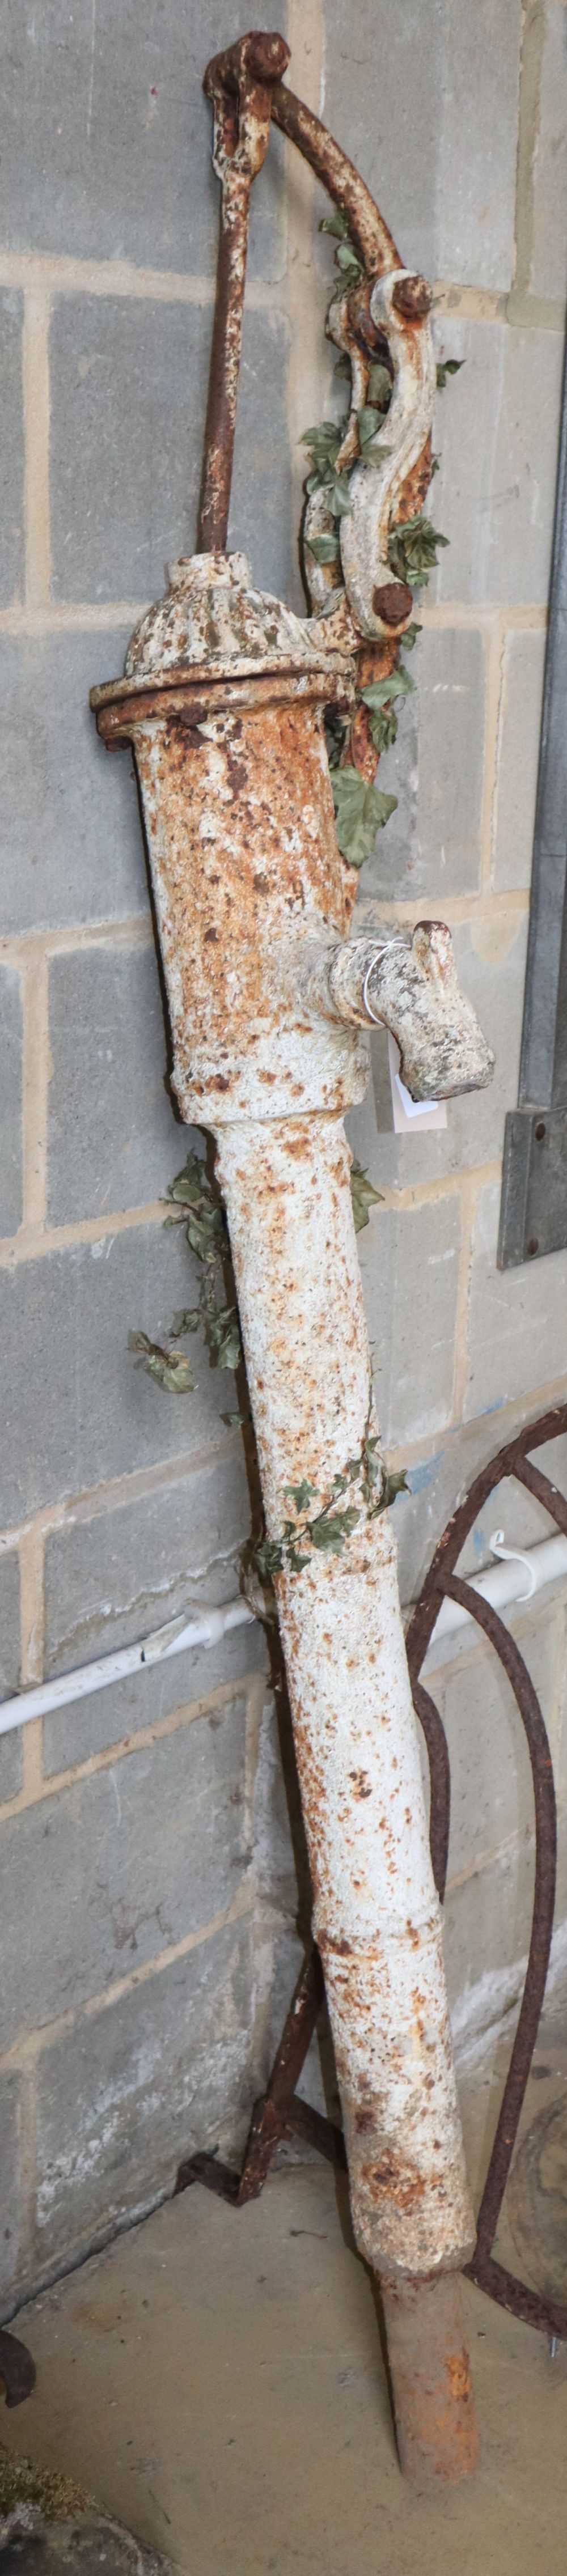 A cast iron garden water pump